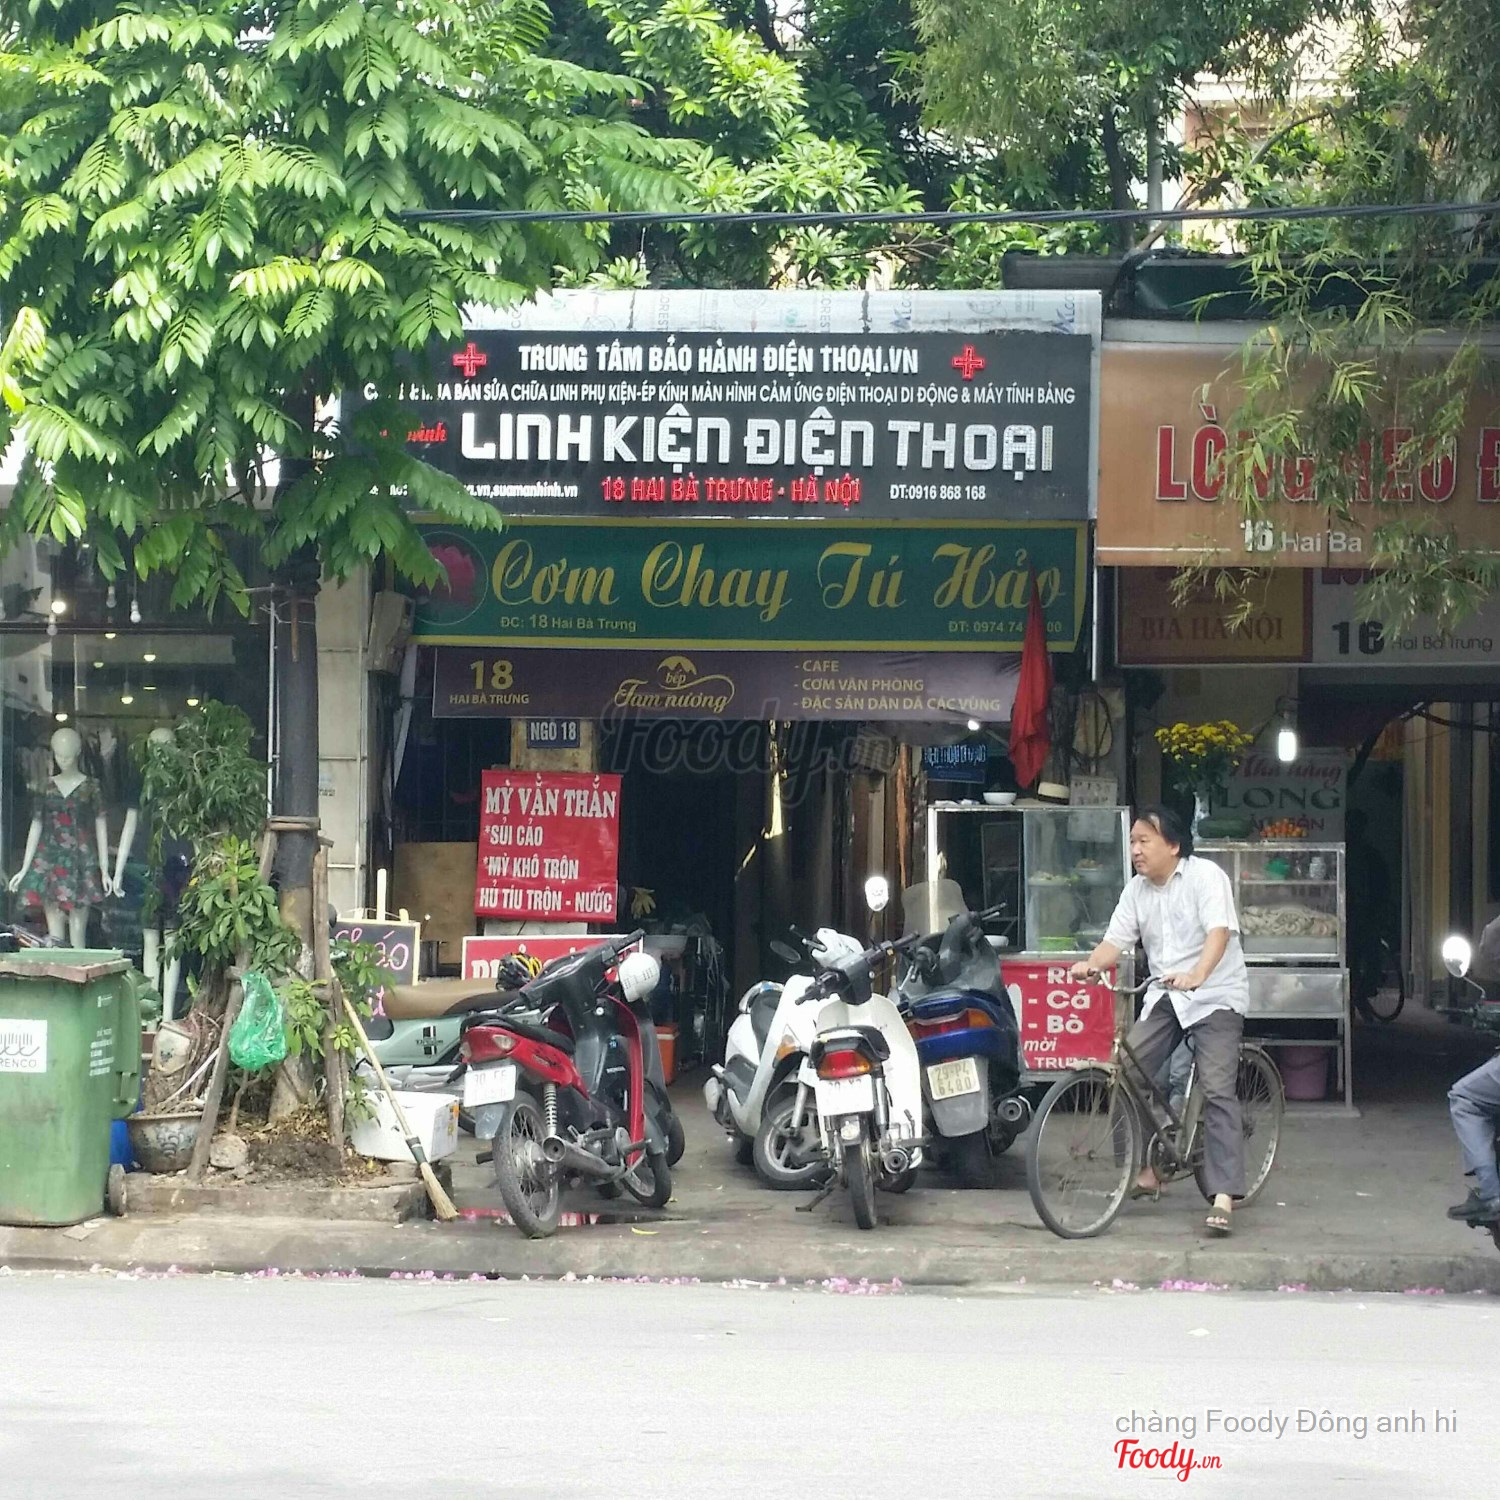 Cơm Chay Tú Hảo Ở Quận Hoàn Kiếm, Hà Nội | Album Tổng Hợp | Cơm Chay Tú Hảo  | Foody.Vn